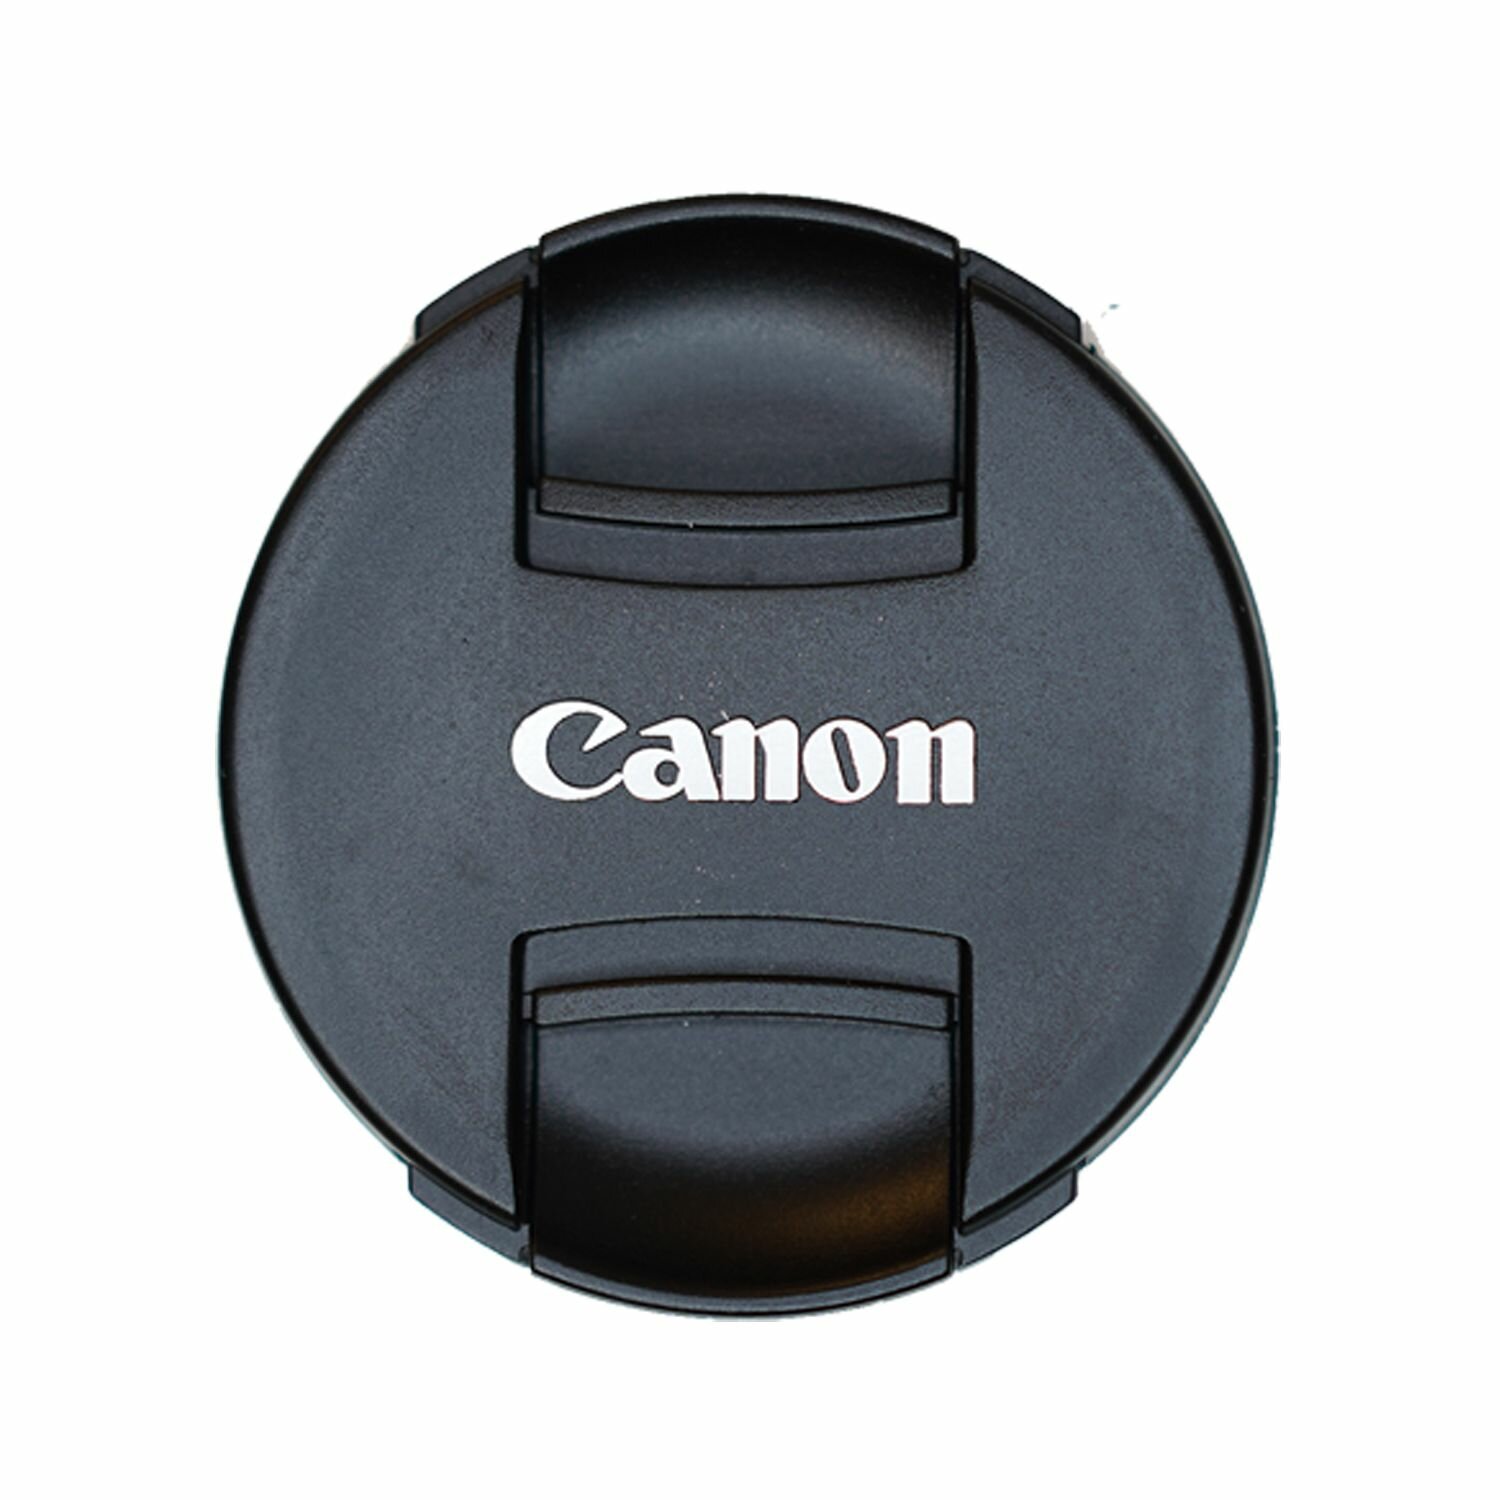 Защитная крышка 49 мм для объектива с надписью "Canon"